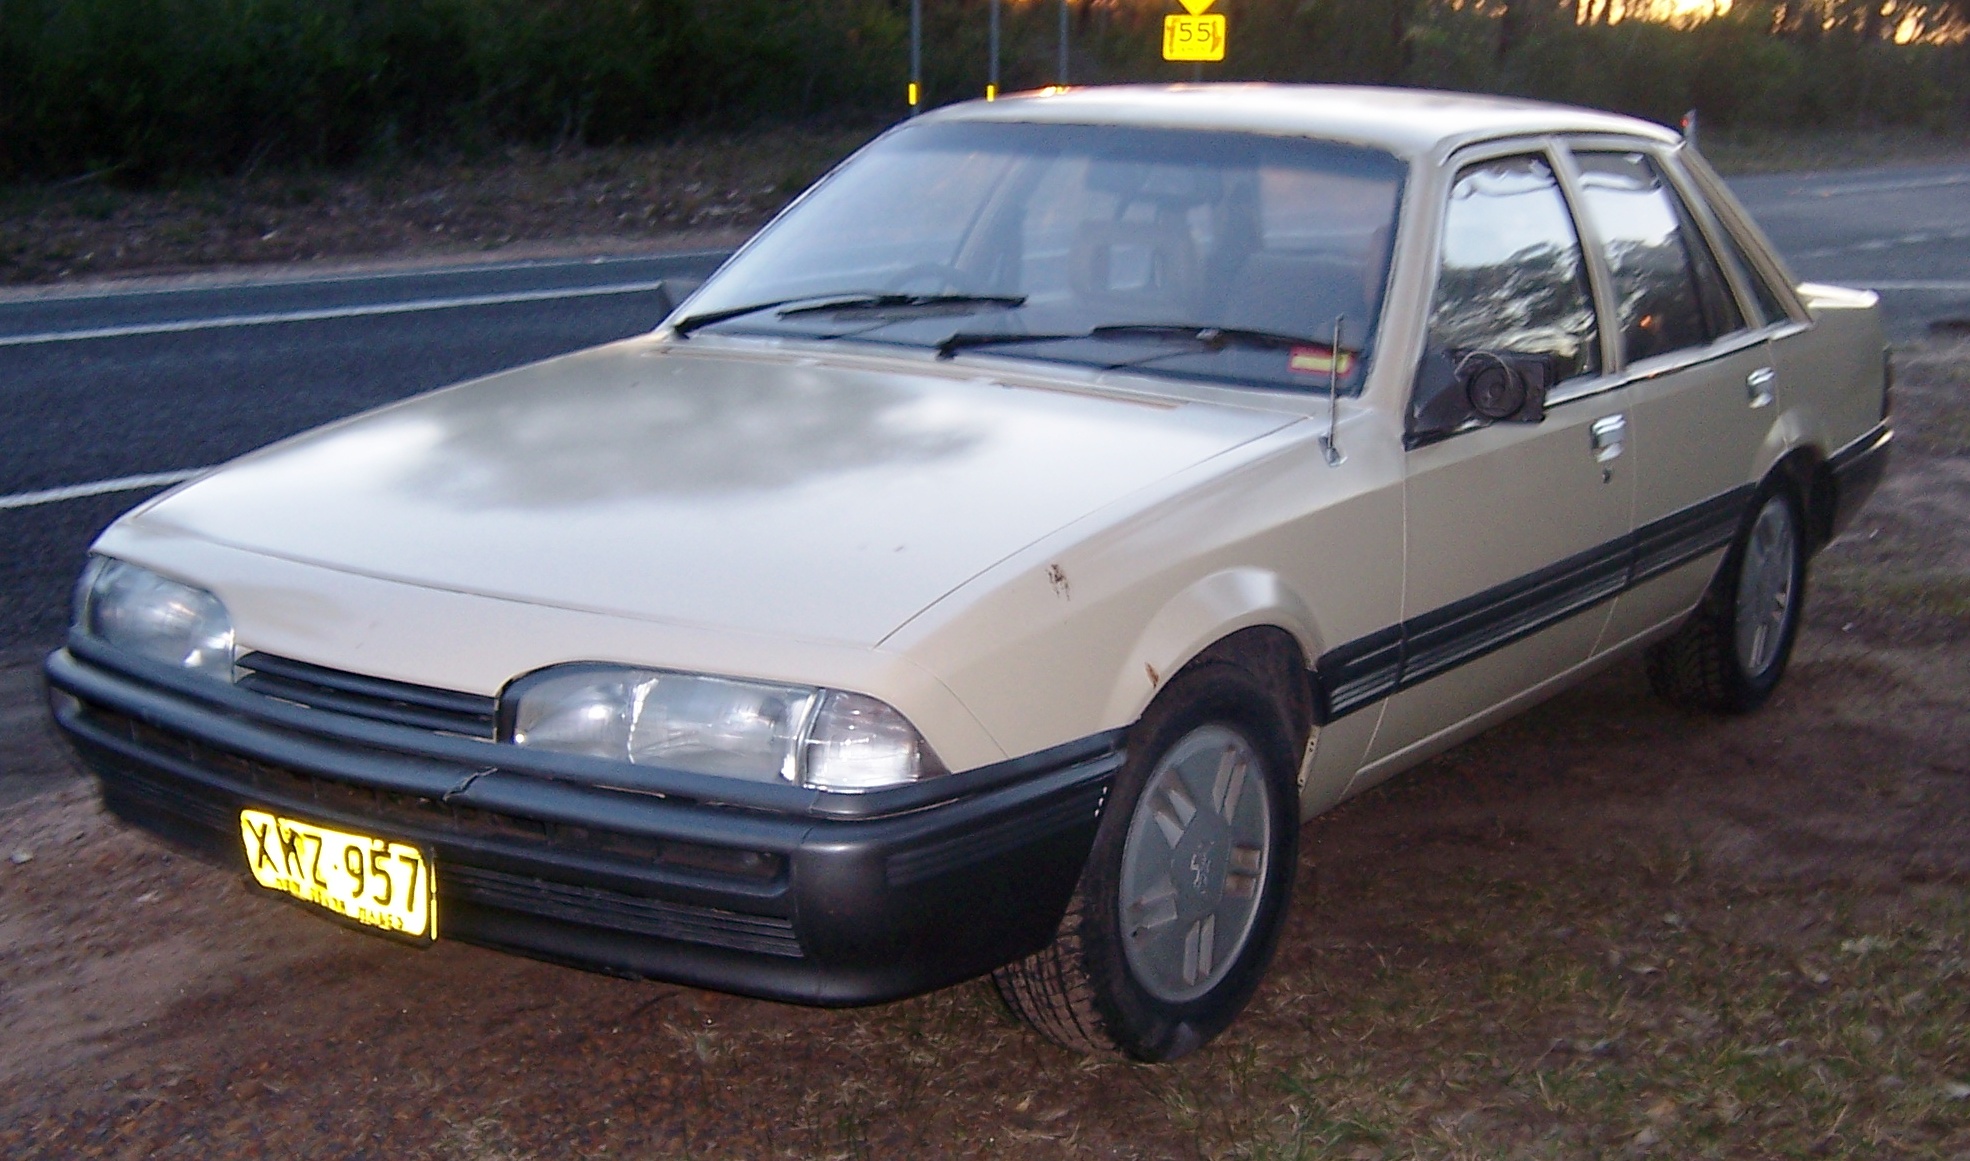 Holden VL Commodore